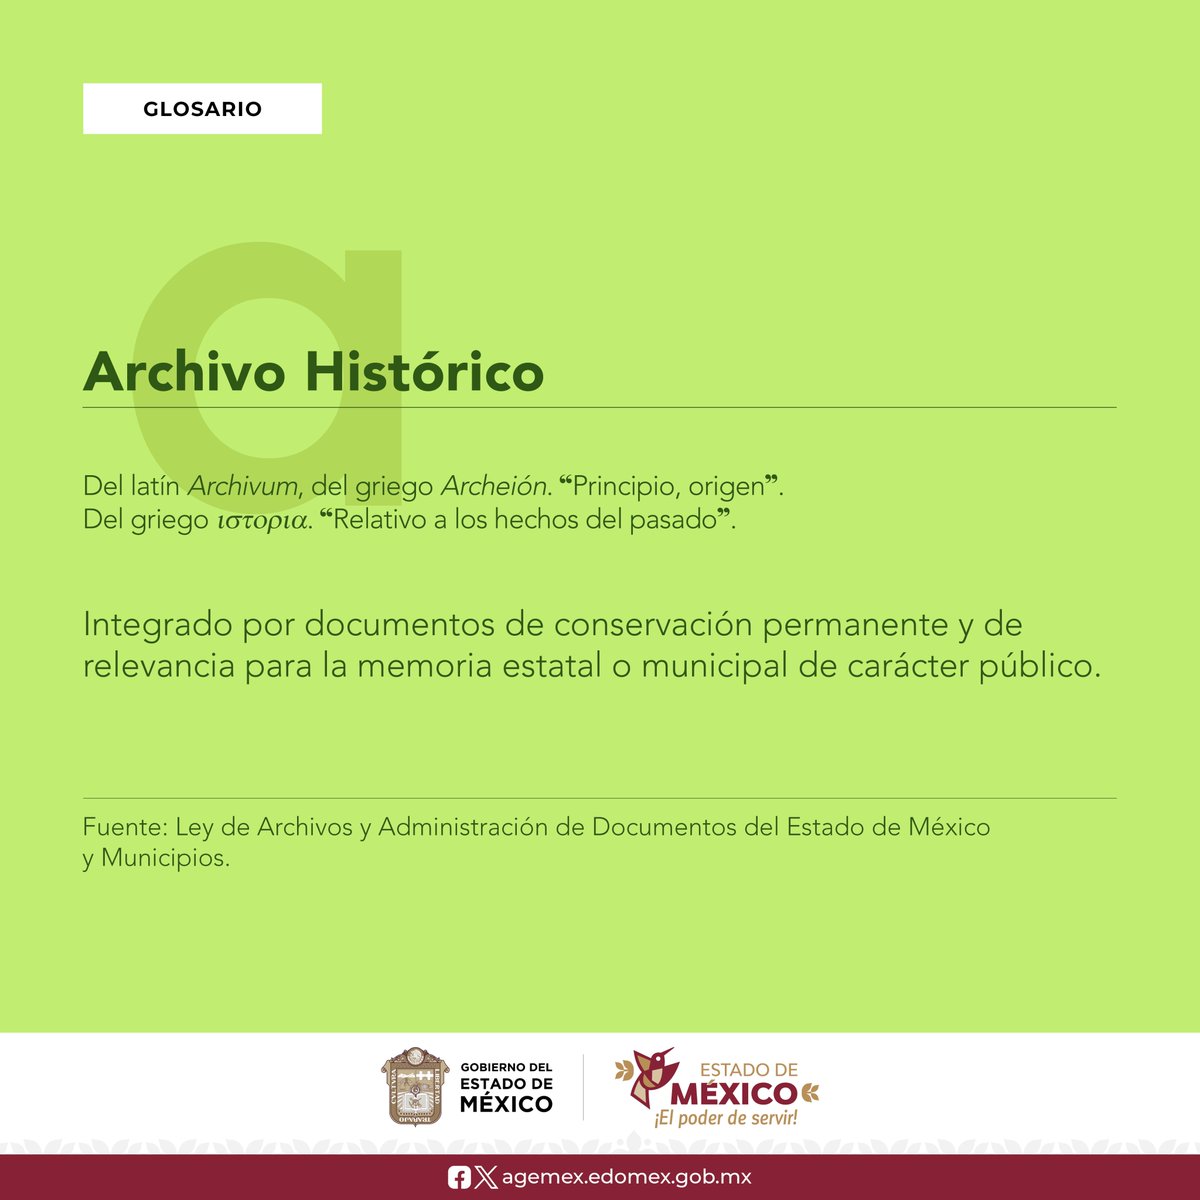 Expande tu vocabulario en el mundo de la #Archivística. #Glosario #ArchivoHistórico #AGEMÉX